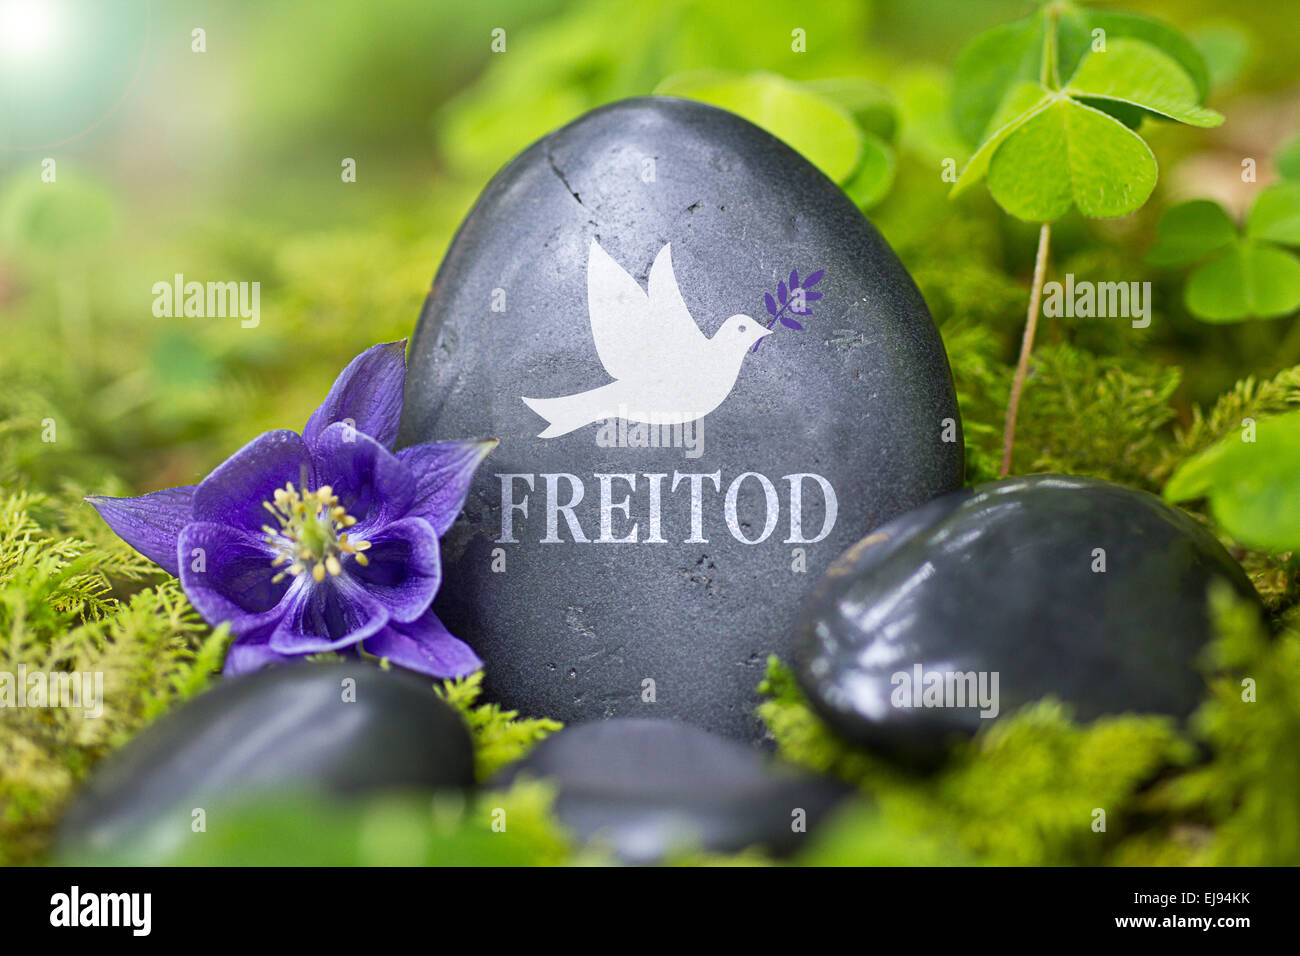 Pietra Nera con la parola "Freitod" Foto Stock